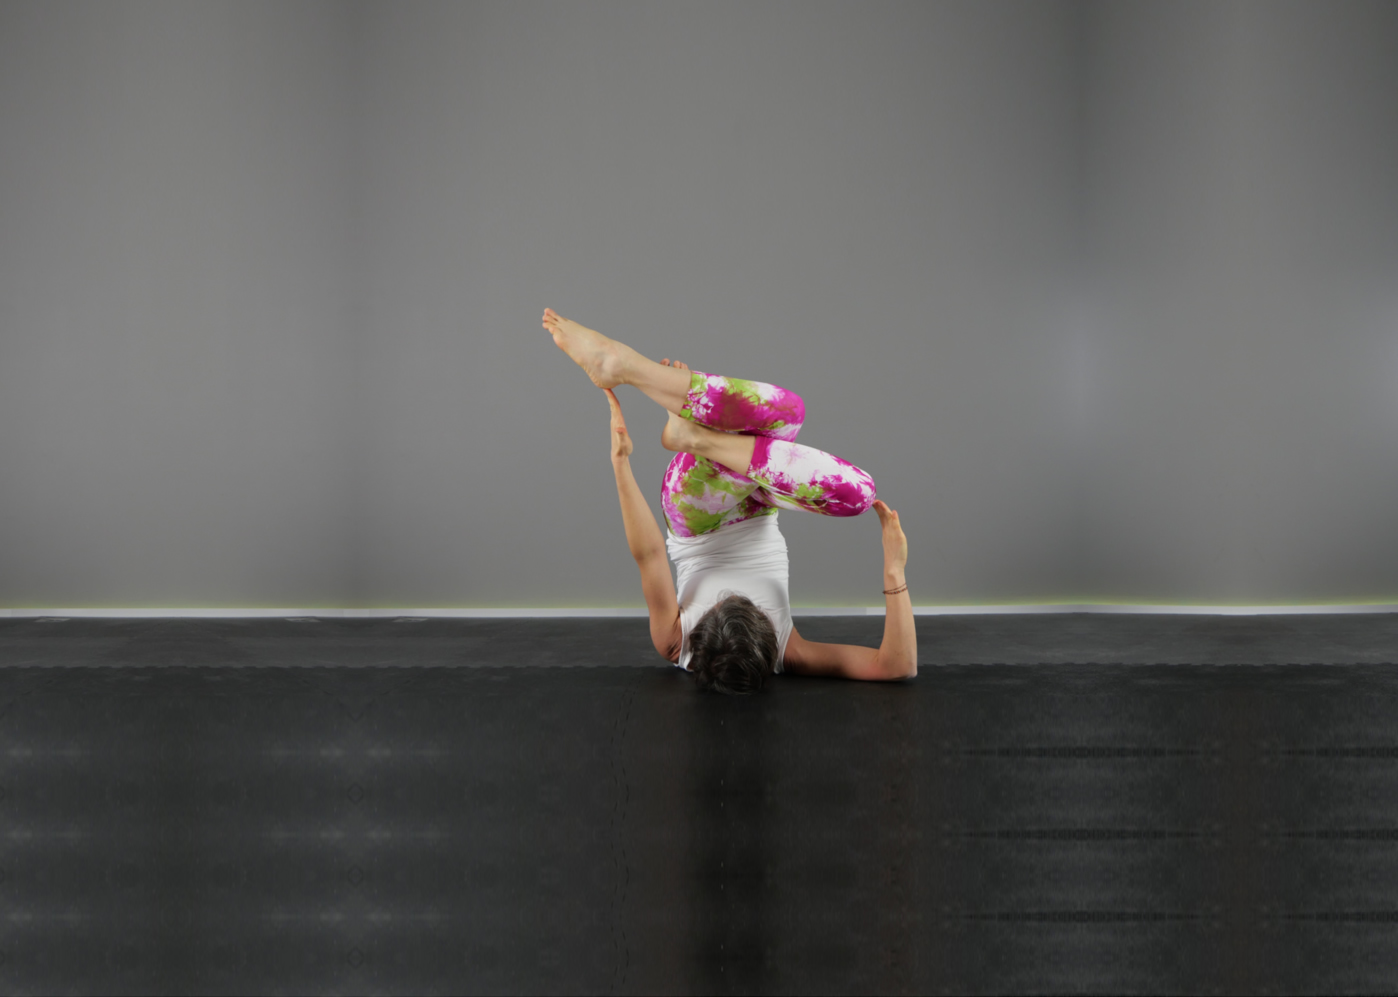 Elisabetta Baso insegnante di vinyasa yoga a padova esegue un’asana, posizione yoga, variante di Sarvangasana, la posizione della candela, con le gambe accavallate con in Garudasana, la posizione dell’aquila un braccio disteso perpendicolare verso l’alto e l’altro piegato verso l’alto ad angolo retto